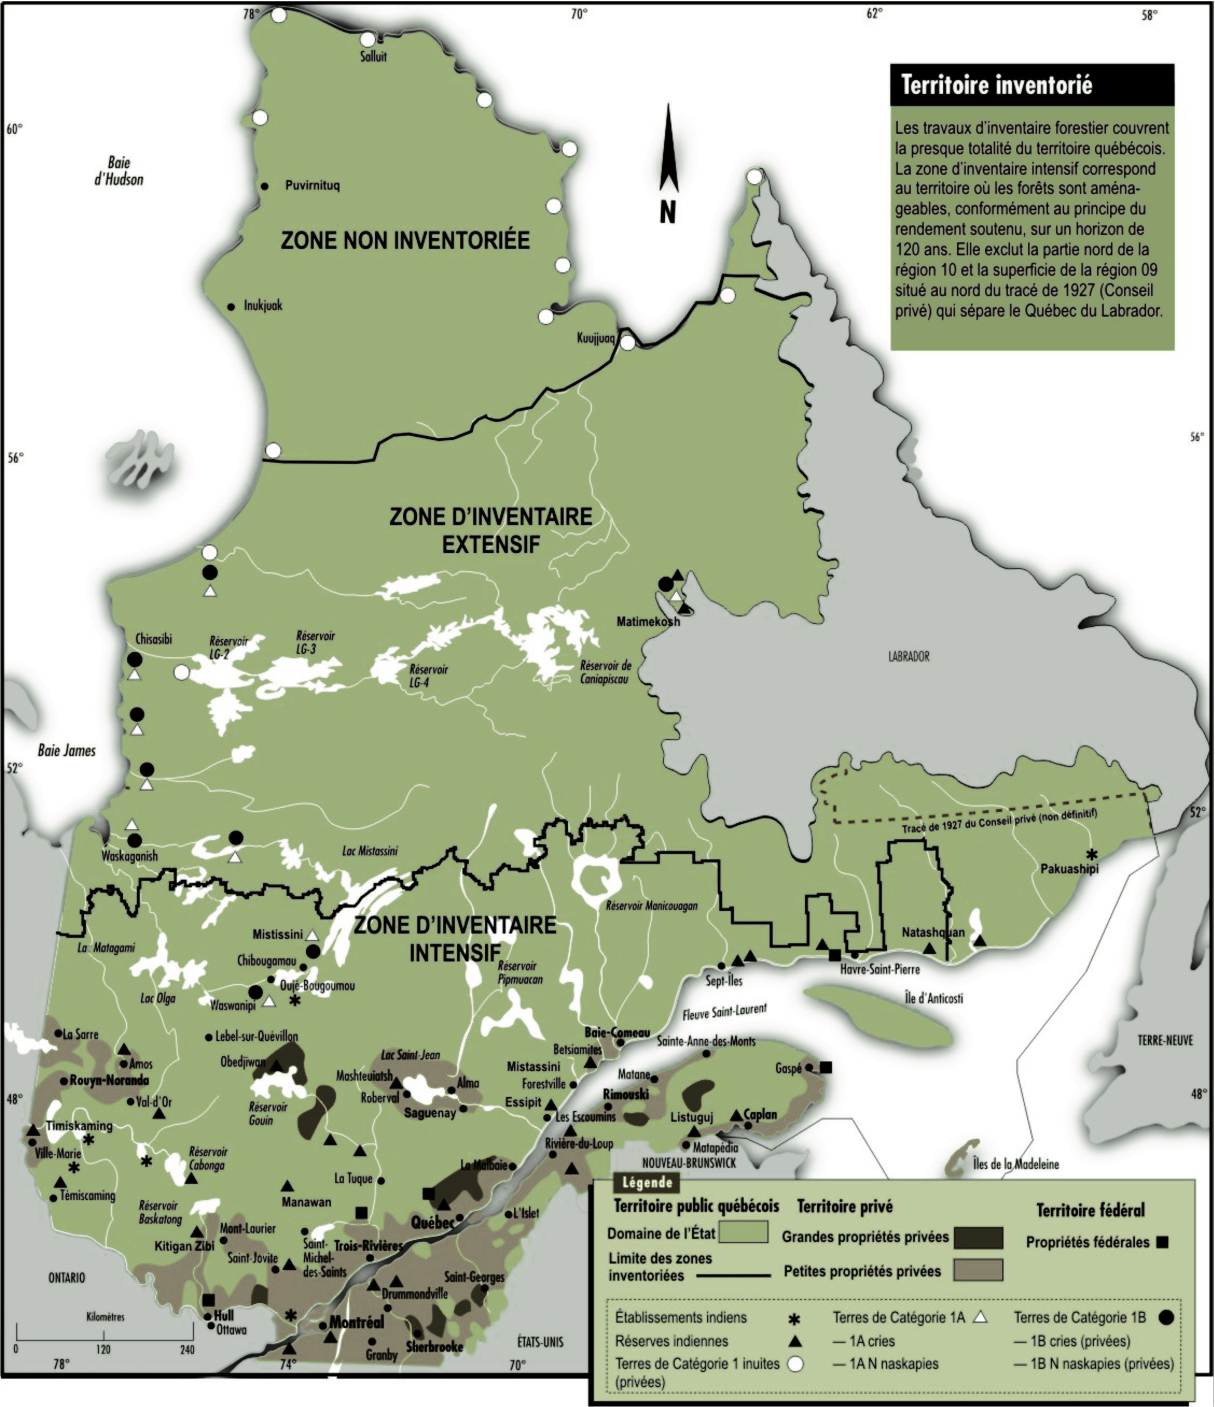 La zone d’inventaire intensif de la forêt québécoise se trouve au sud du 52ième parallèle.